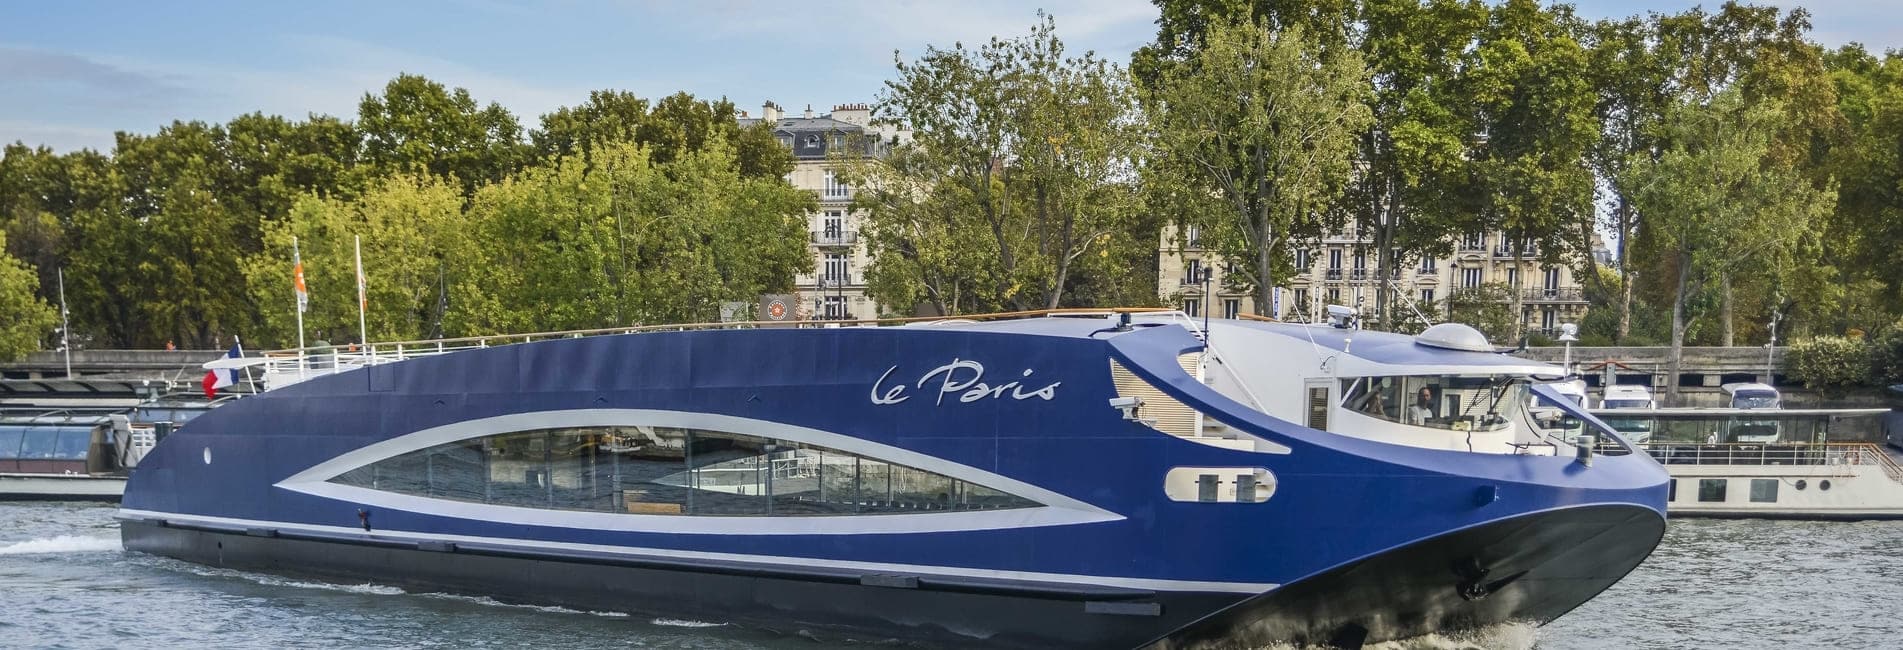 Le Paris en navigation sur la Seine